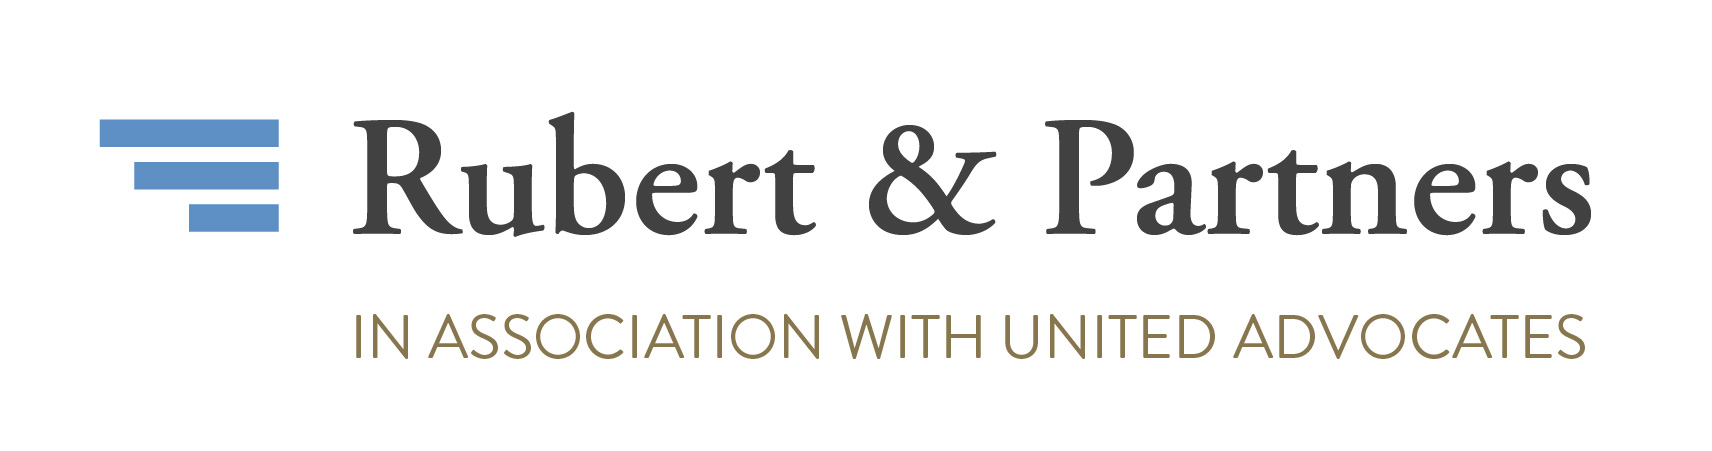 Rubert & Partners